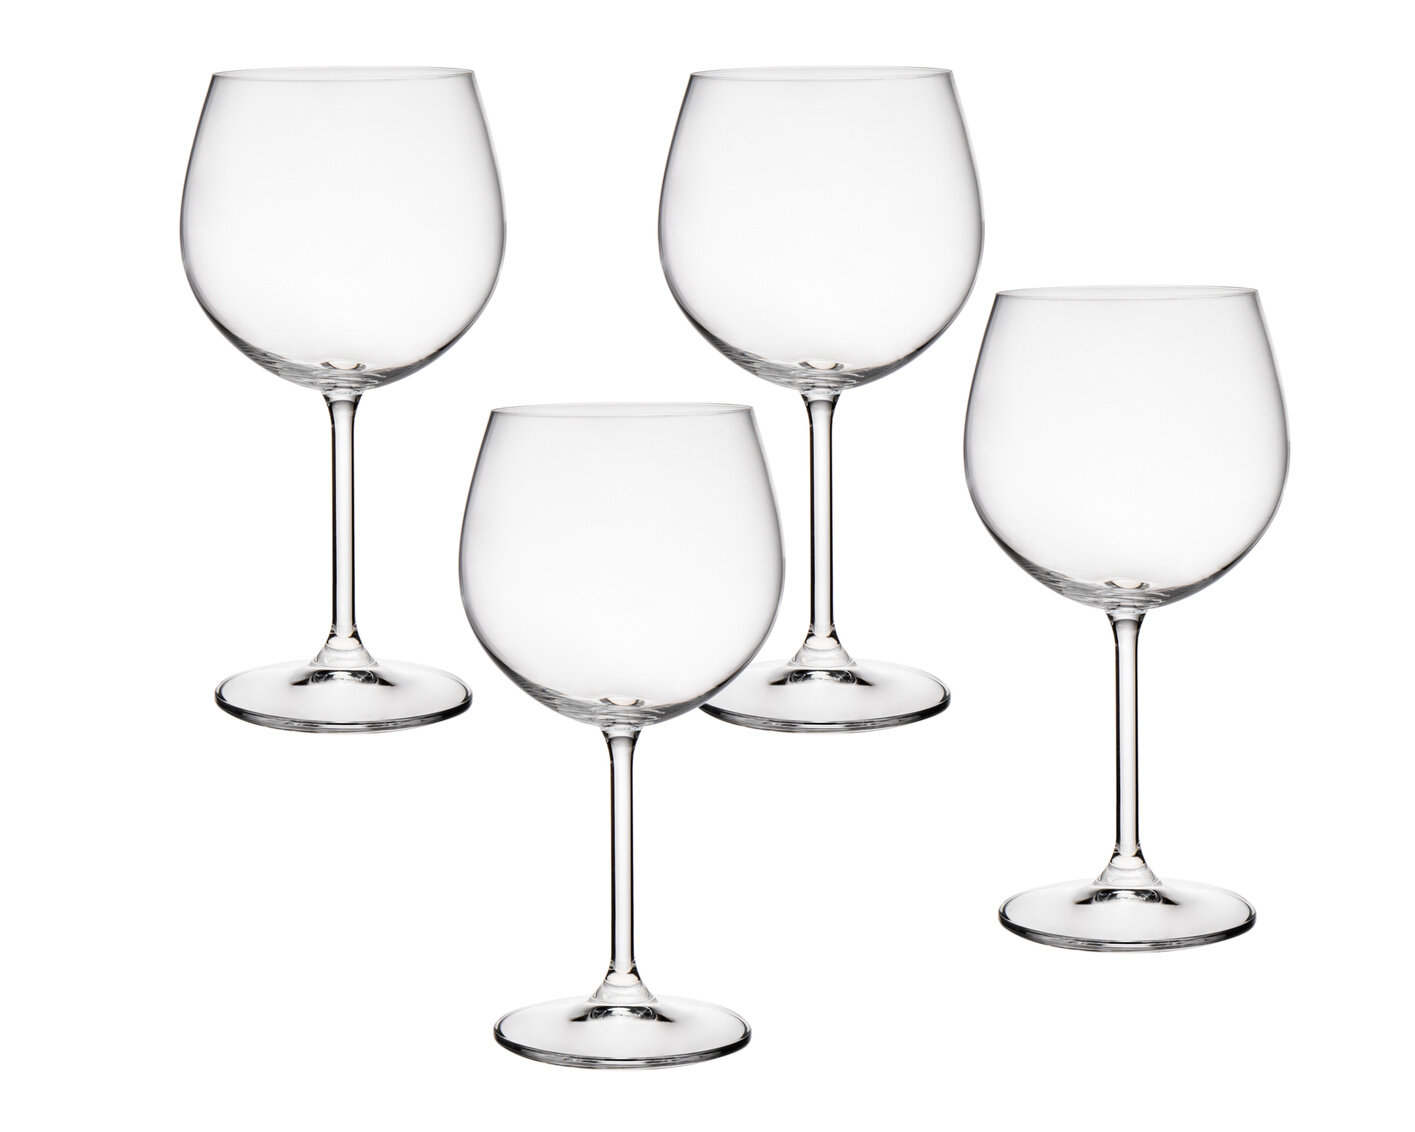 Godinger Dublin Stemless Wine Glasses, Set of 4